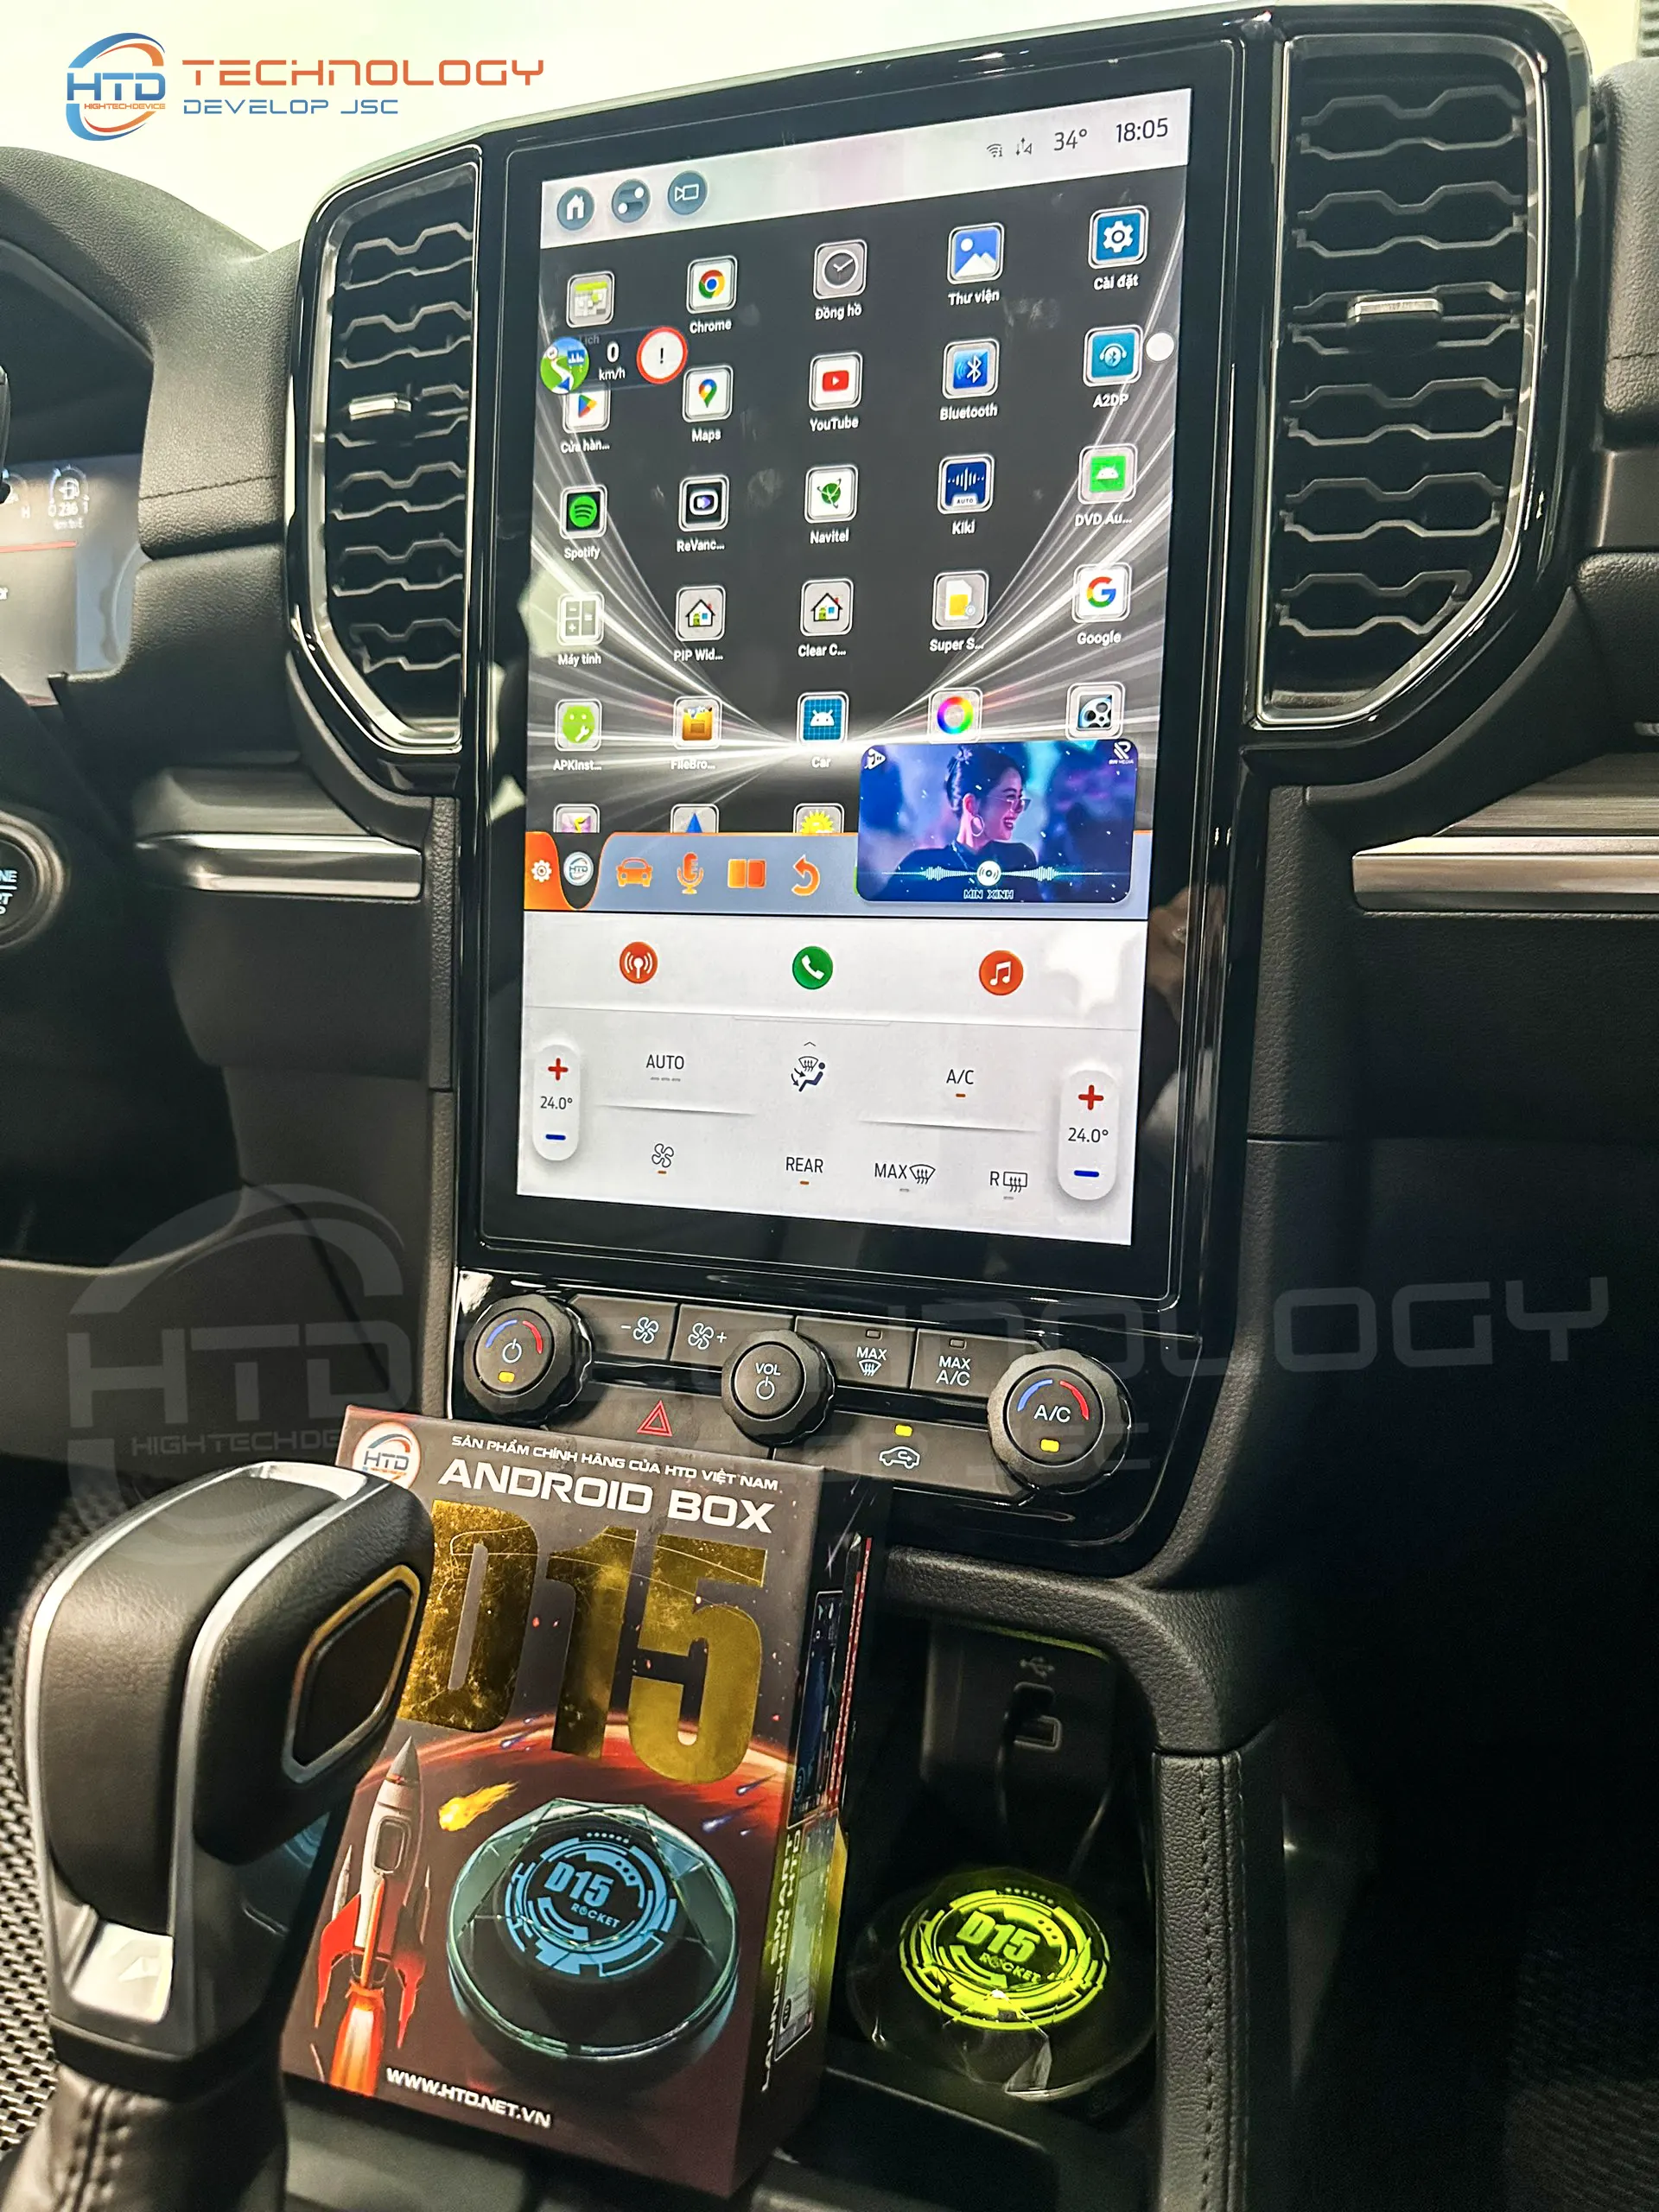 Đa dạng các tính năng giải trí trên Android Box cho ô tô Ford